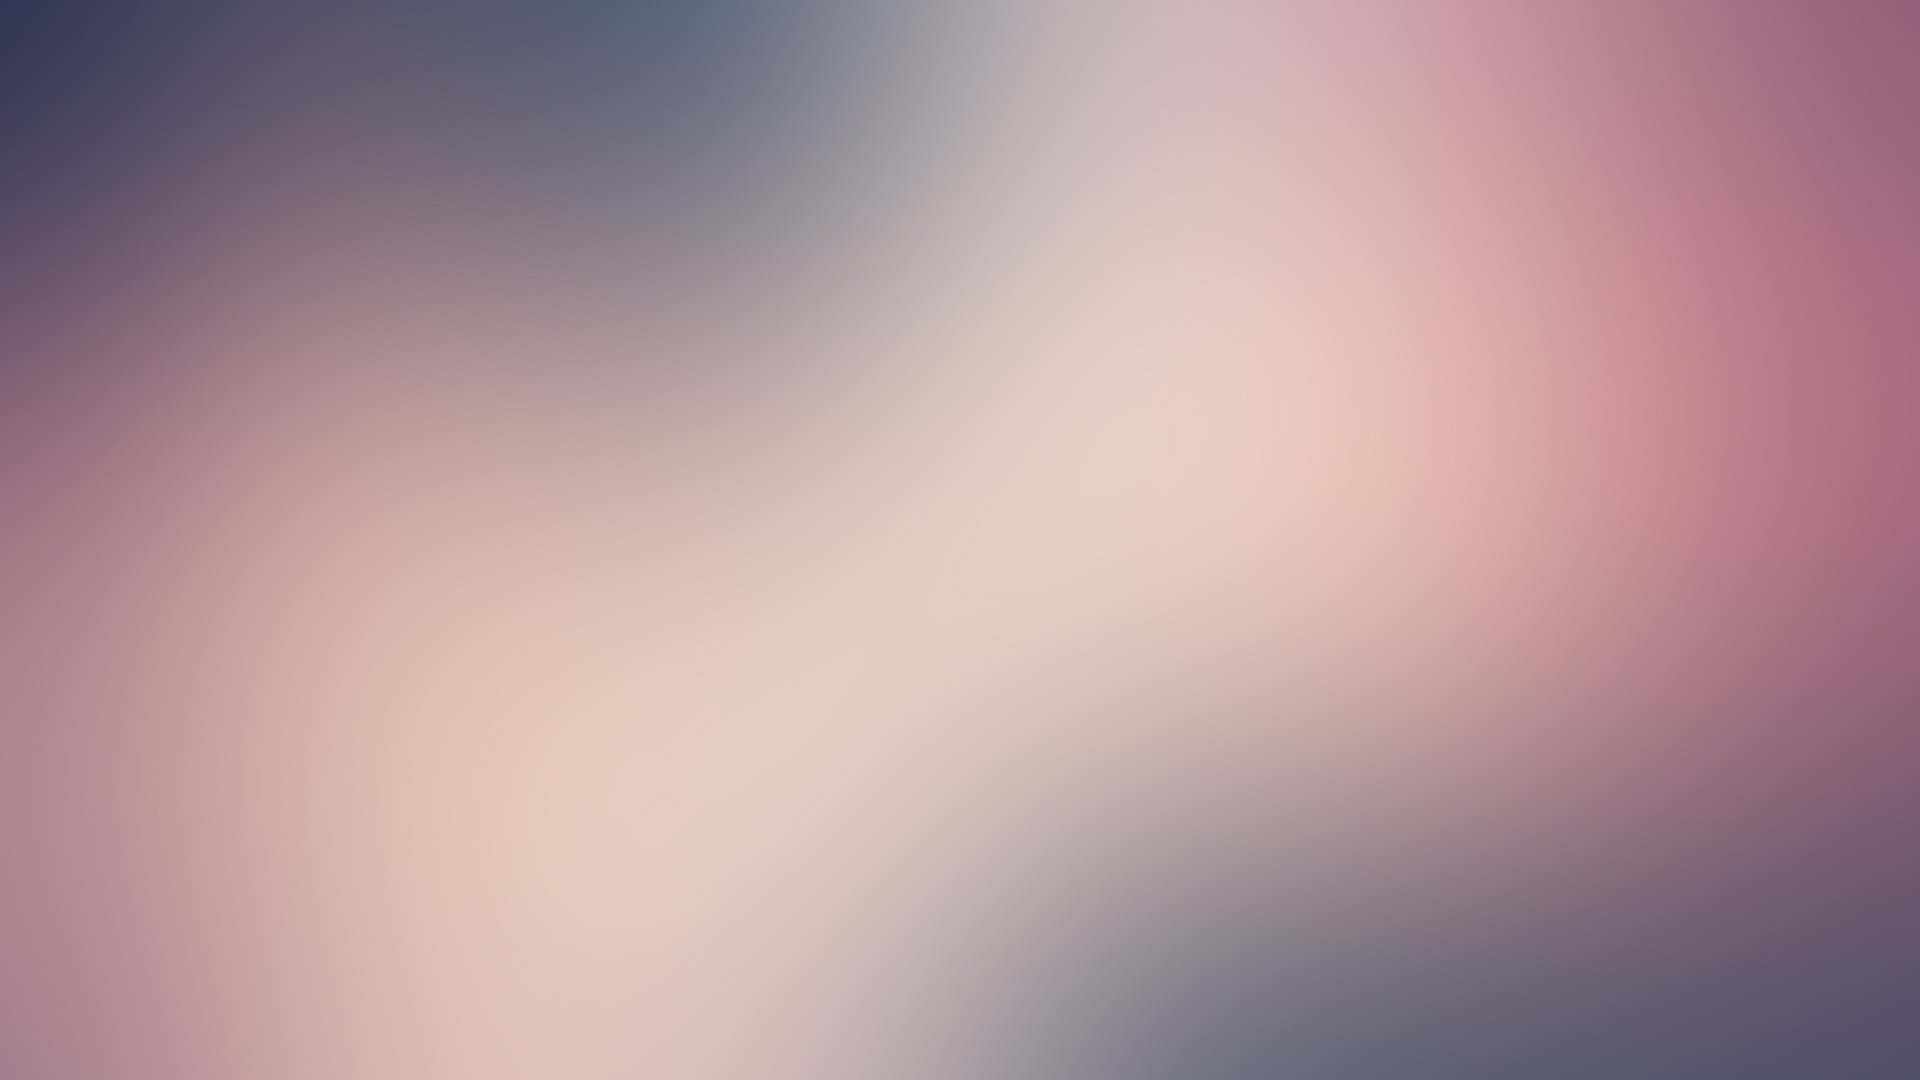 General 1920x1080 gradient blurred minimalism pink texture